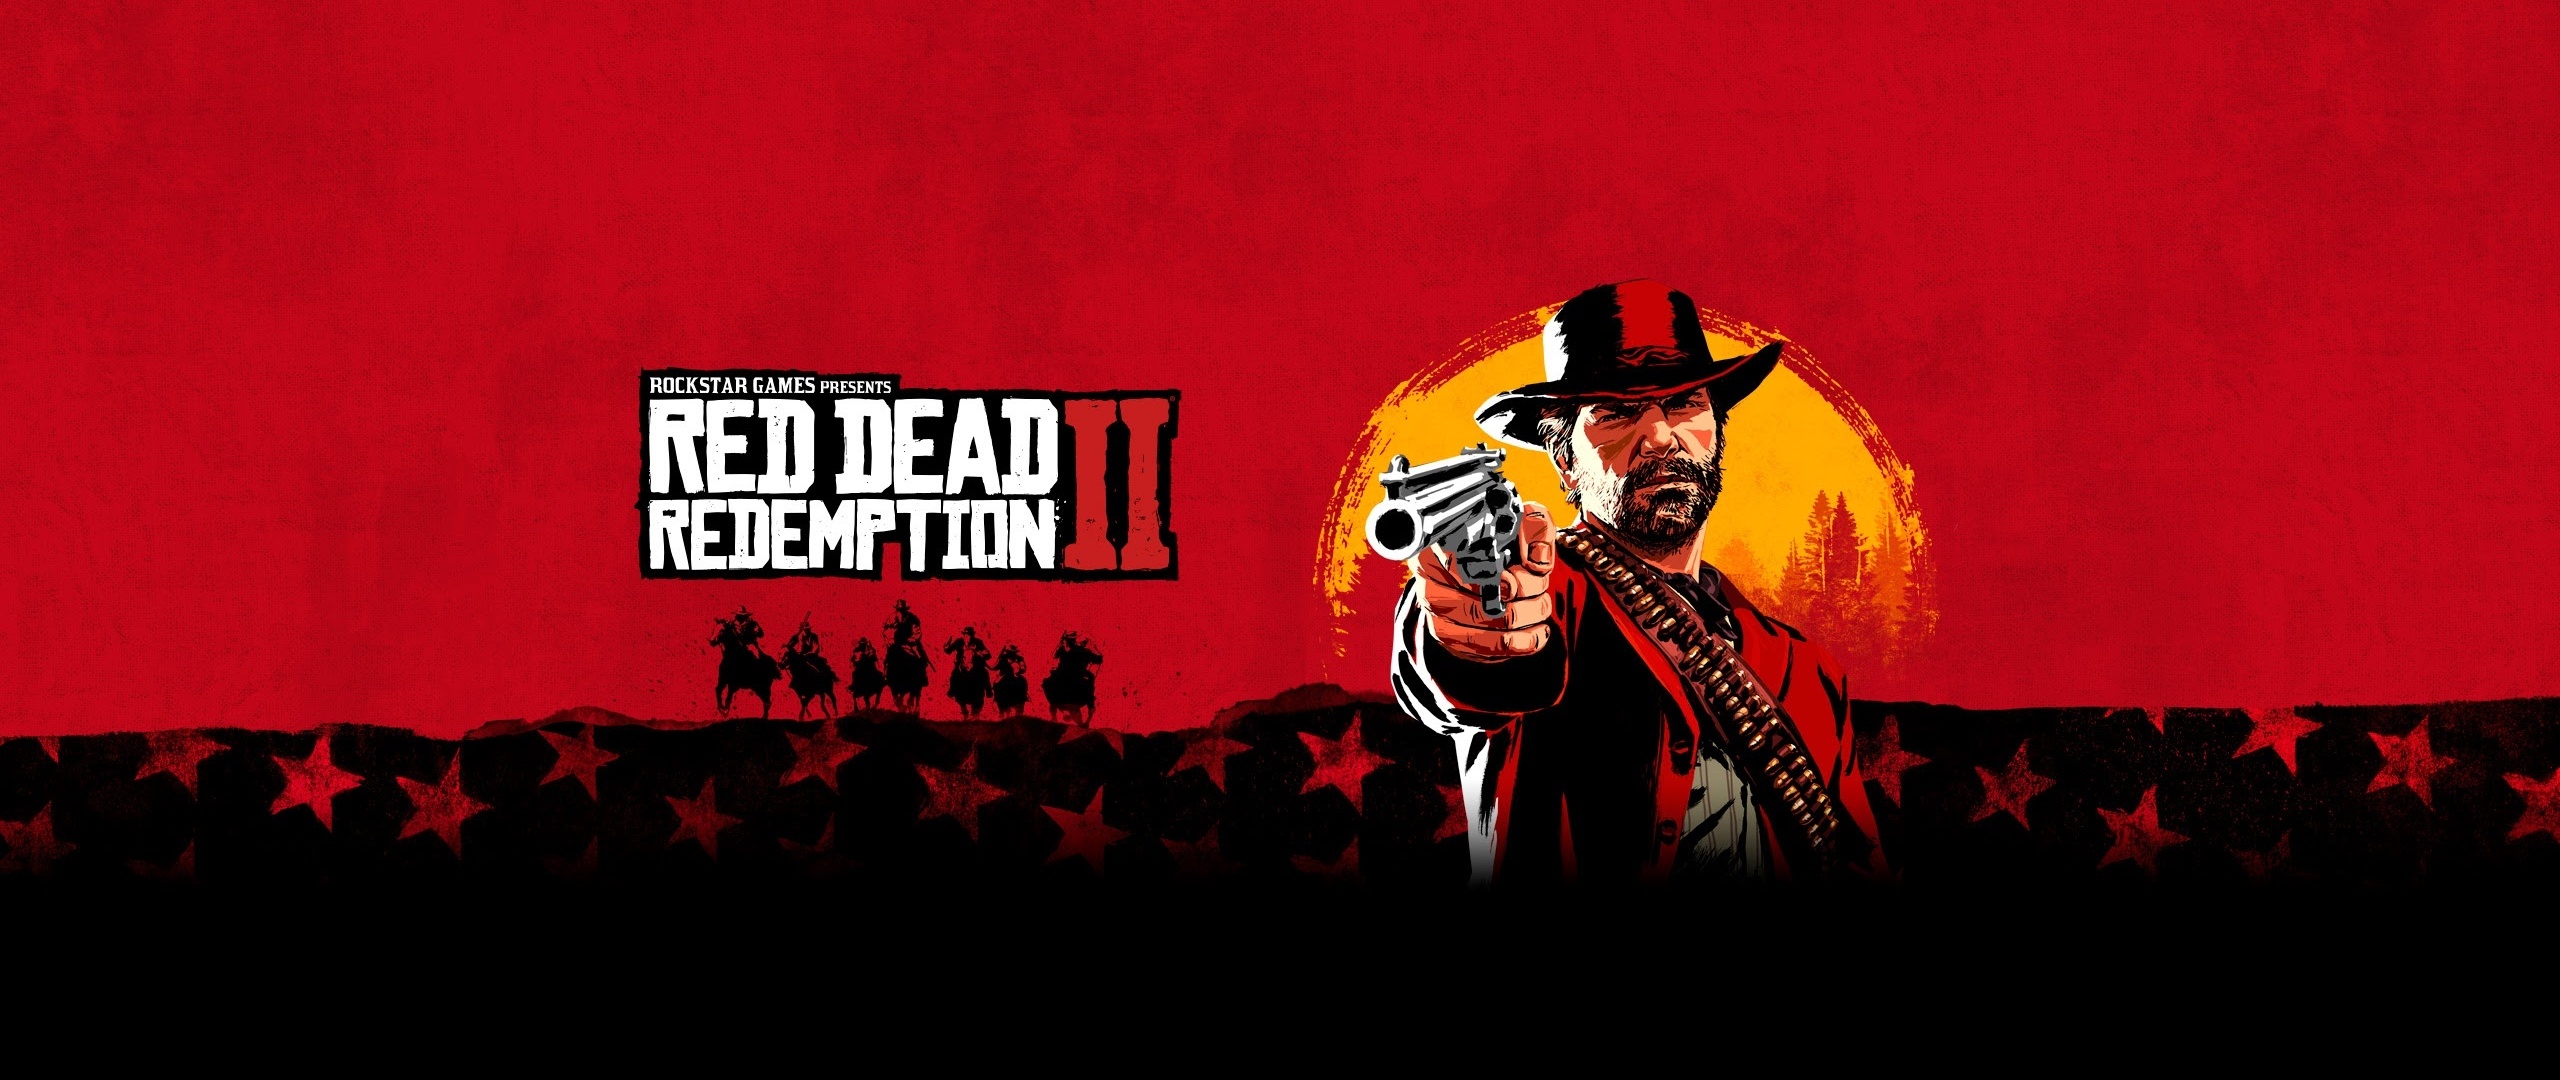 Red dead redemption 1 steam